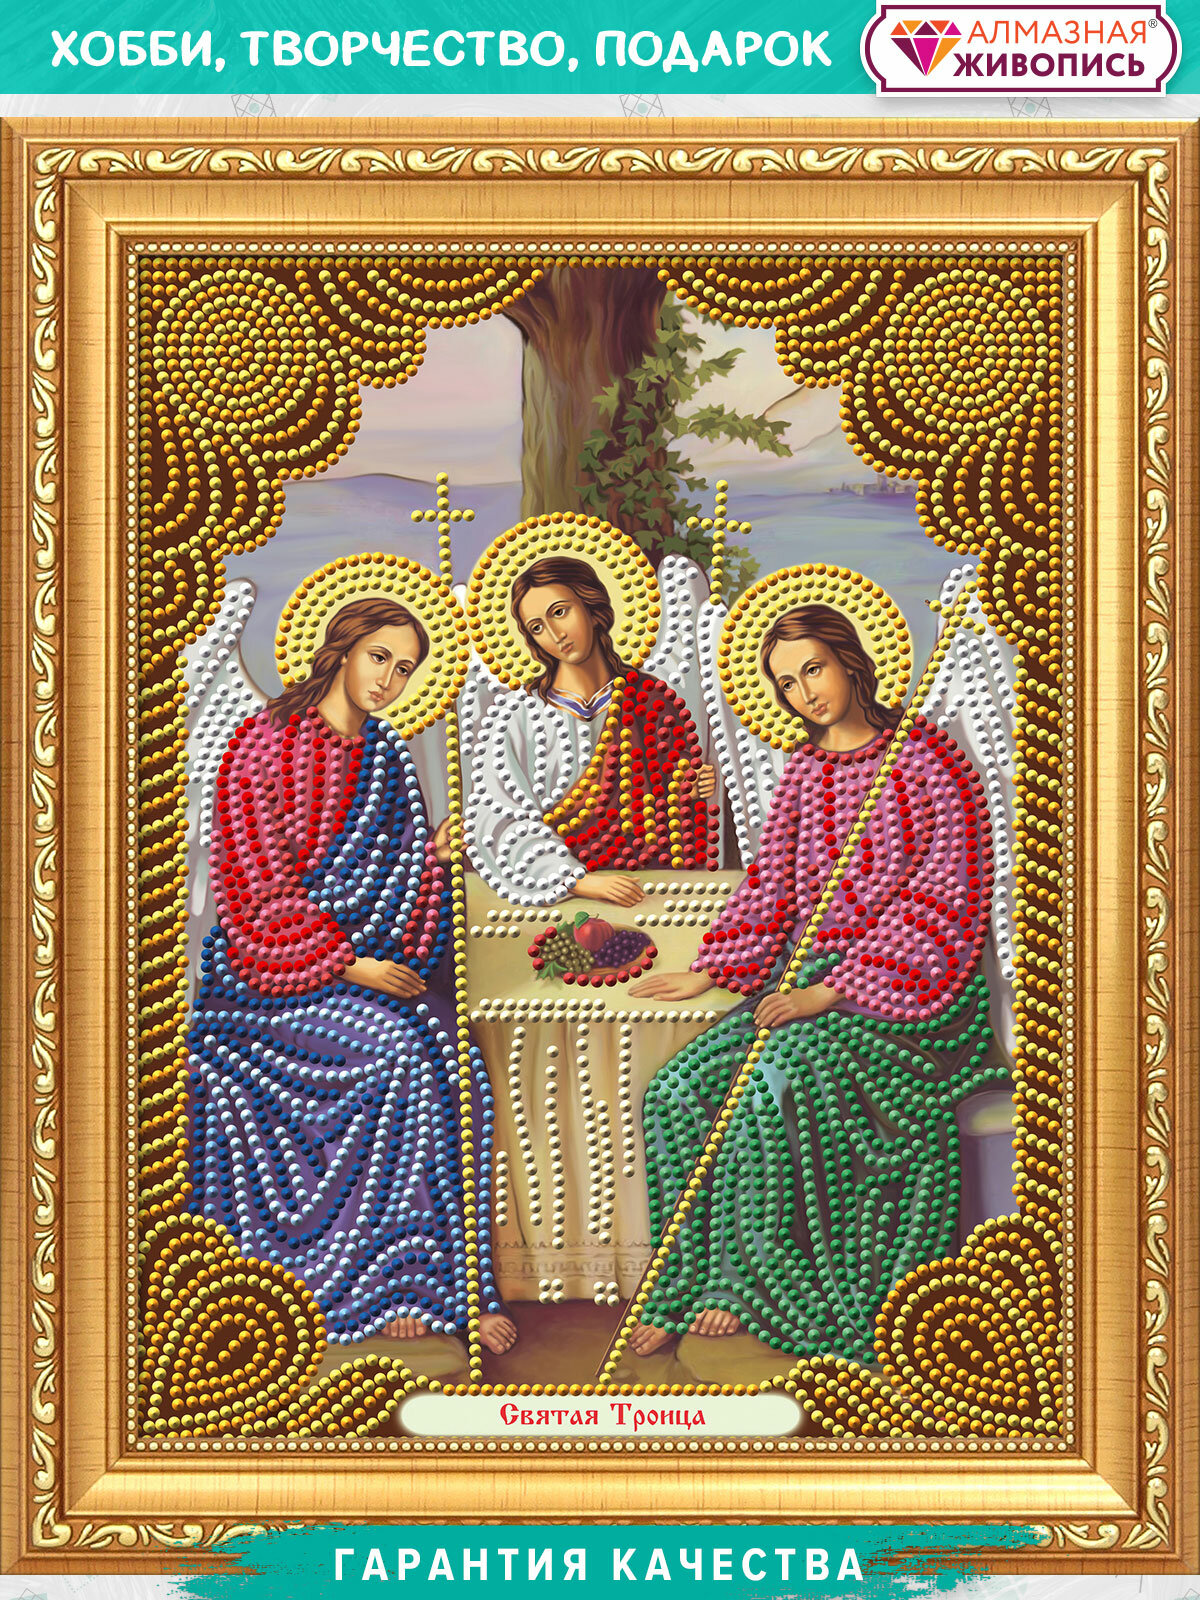 Святая Троица (АЖ-5041) - картина стразами Алмазная живопись - фото №1